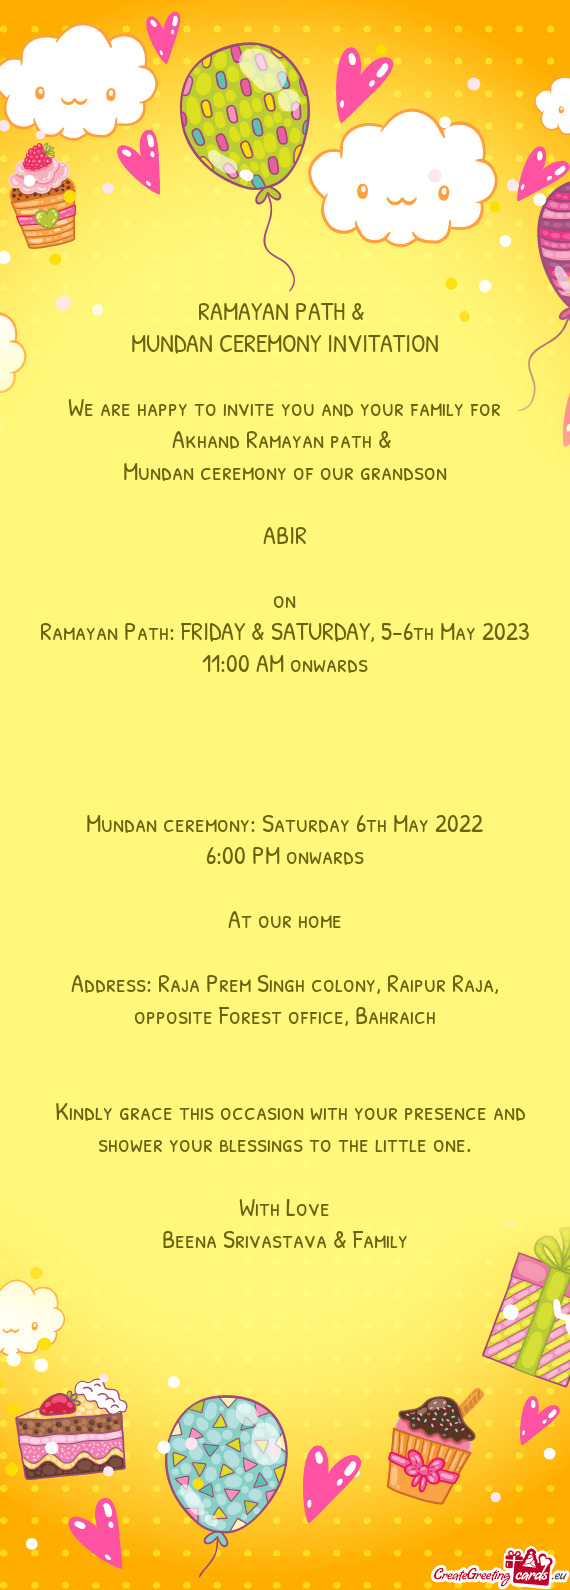 Ramayan Path: FRIDAY & SATURDAY, 5-6th May 2023